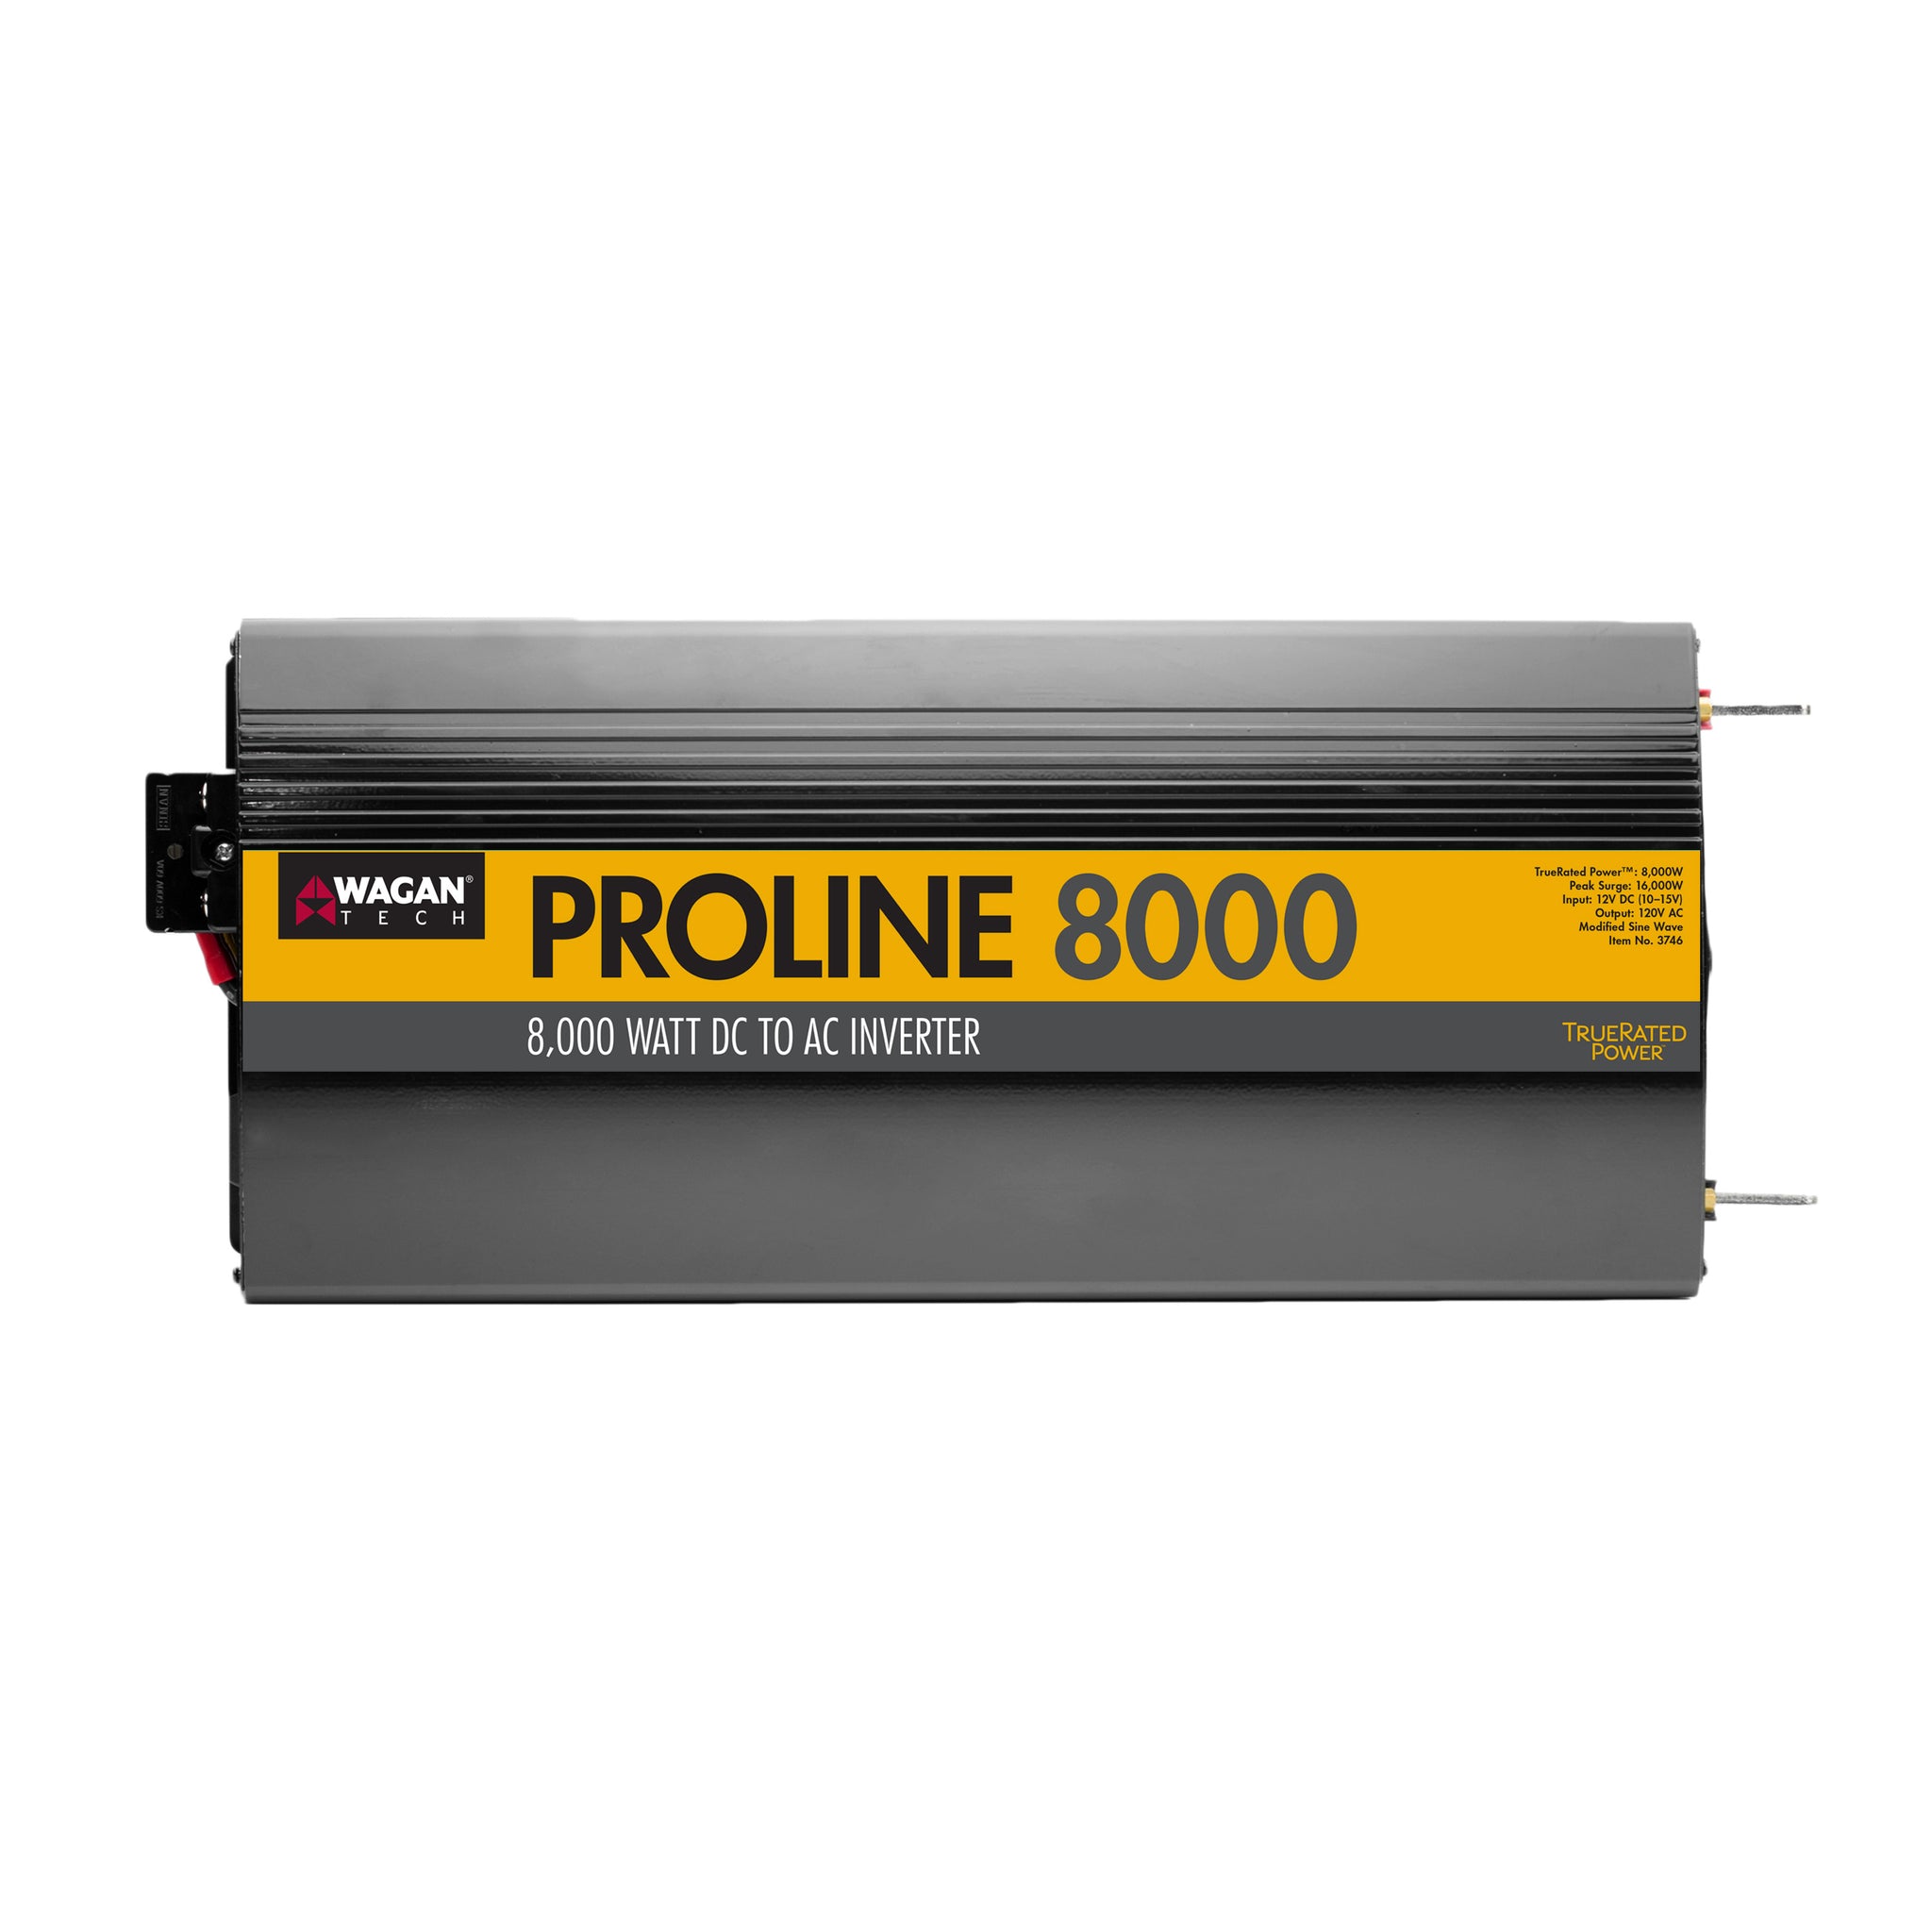 proline power inverter